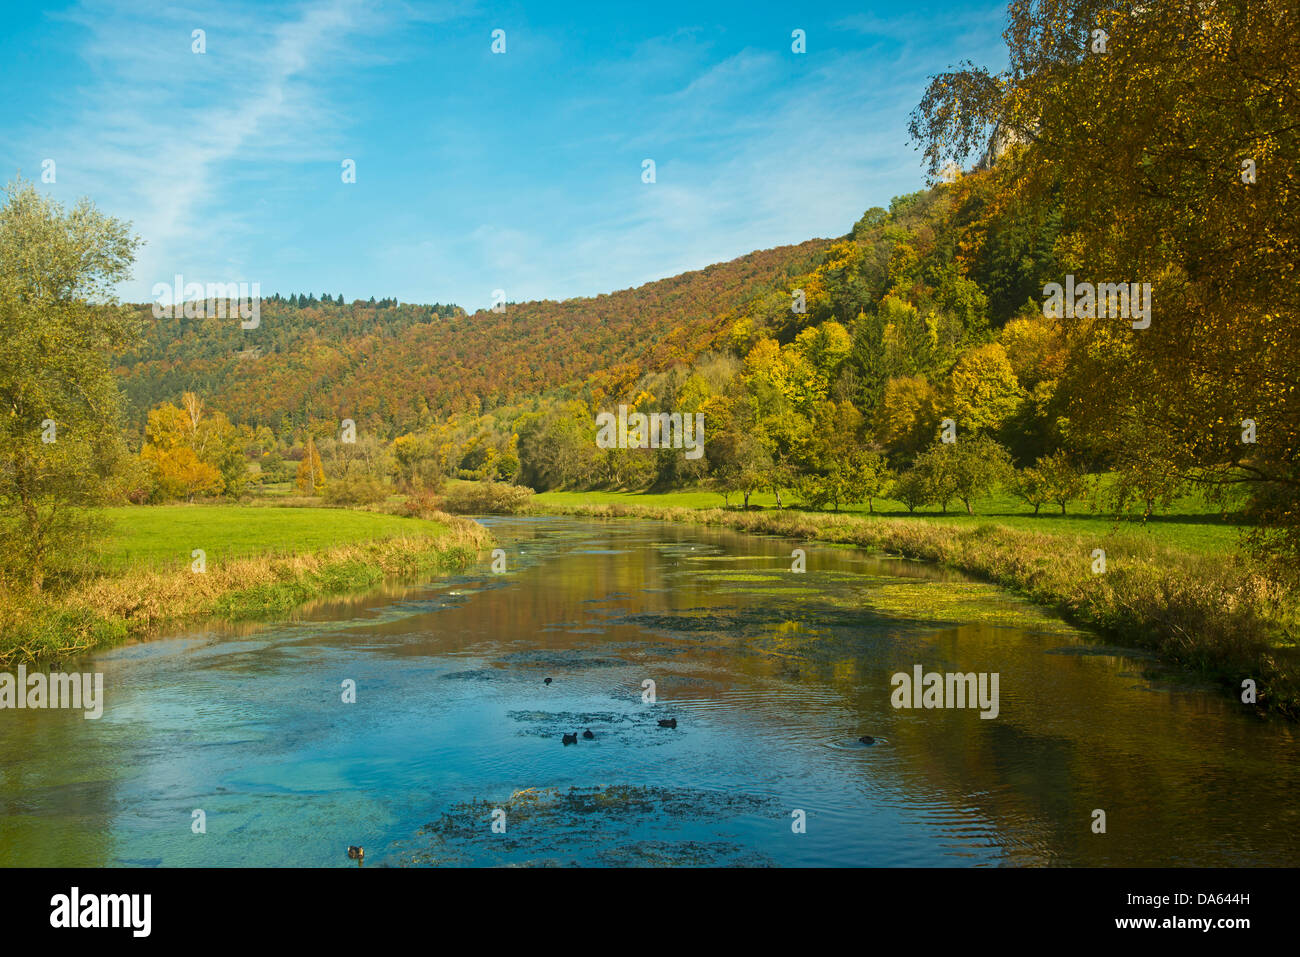 Bleu, Bleu, le débit de la rivière, vallée, Blaubeuren, Alb Donau, Baden-Wurttemberg, Allemagne, Europe, paysage, paysage, Banque D'Images